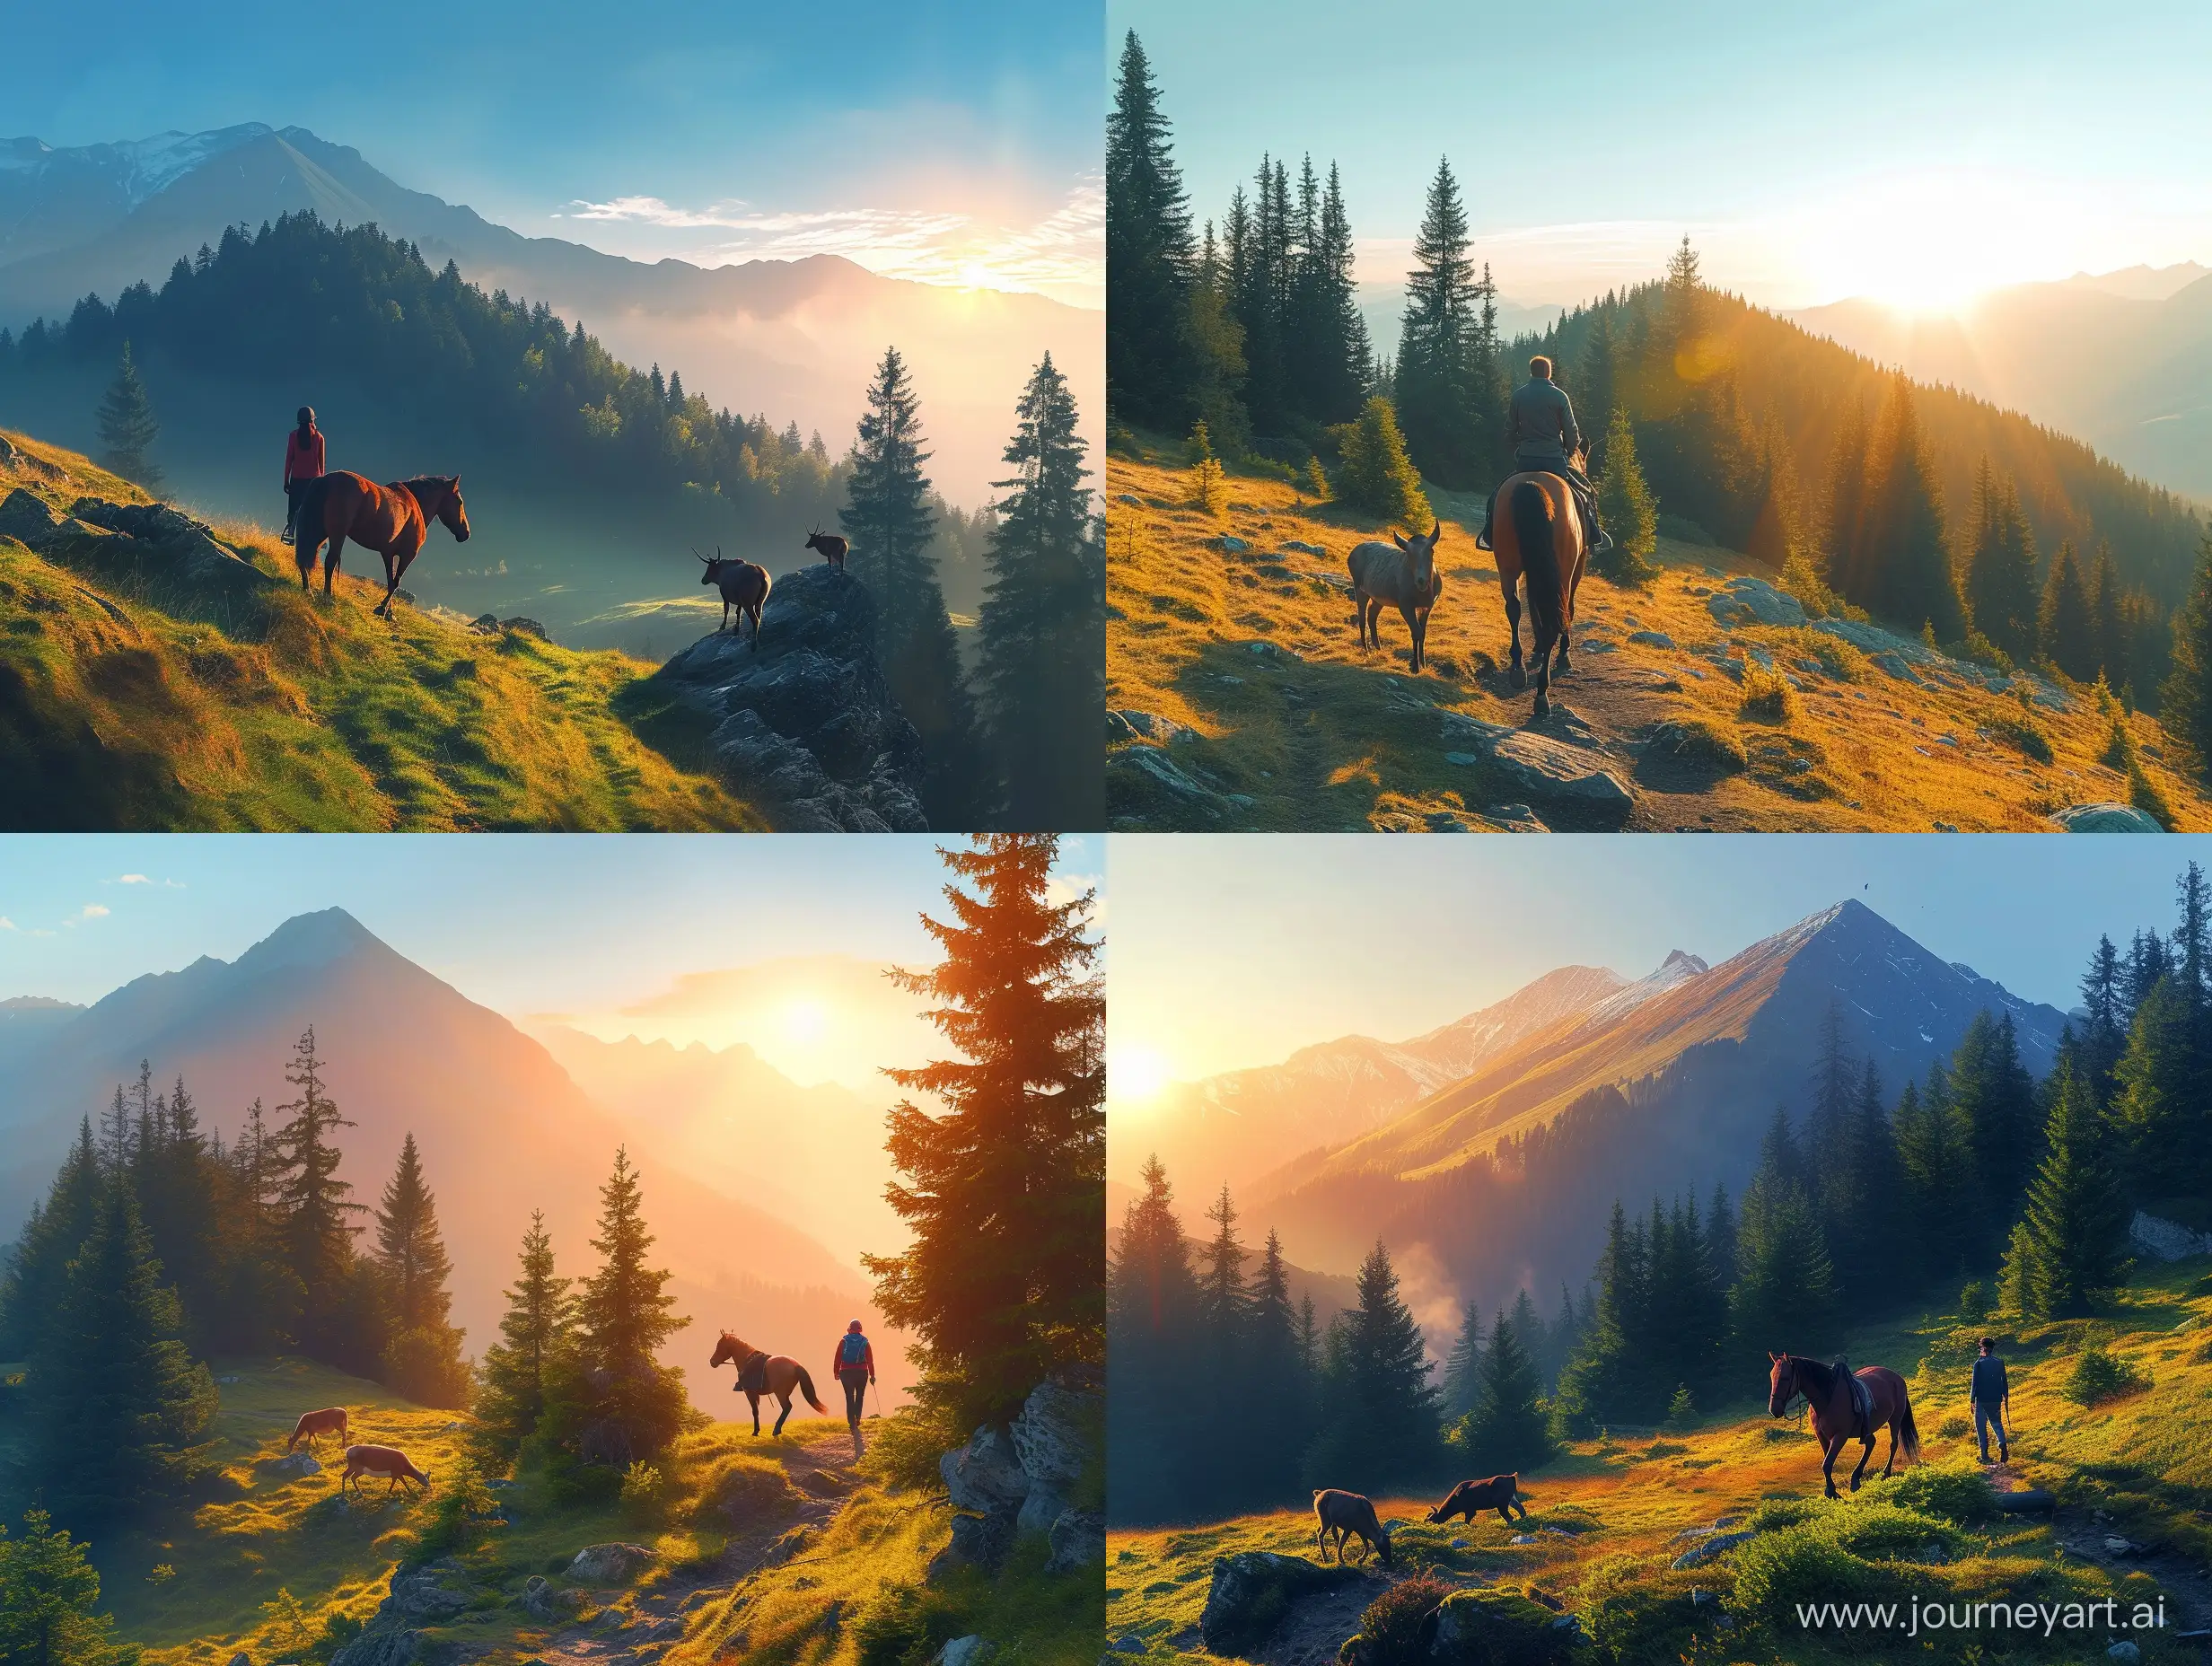 человек идет пешком с лошадью  на вершину горы, вокруг лес, солнце близится к закату, небо голубое, альпииские луга где то ниже пасется  марал с маралихой